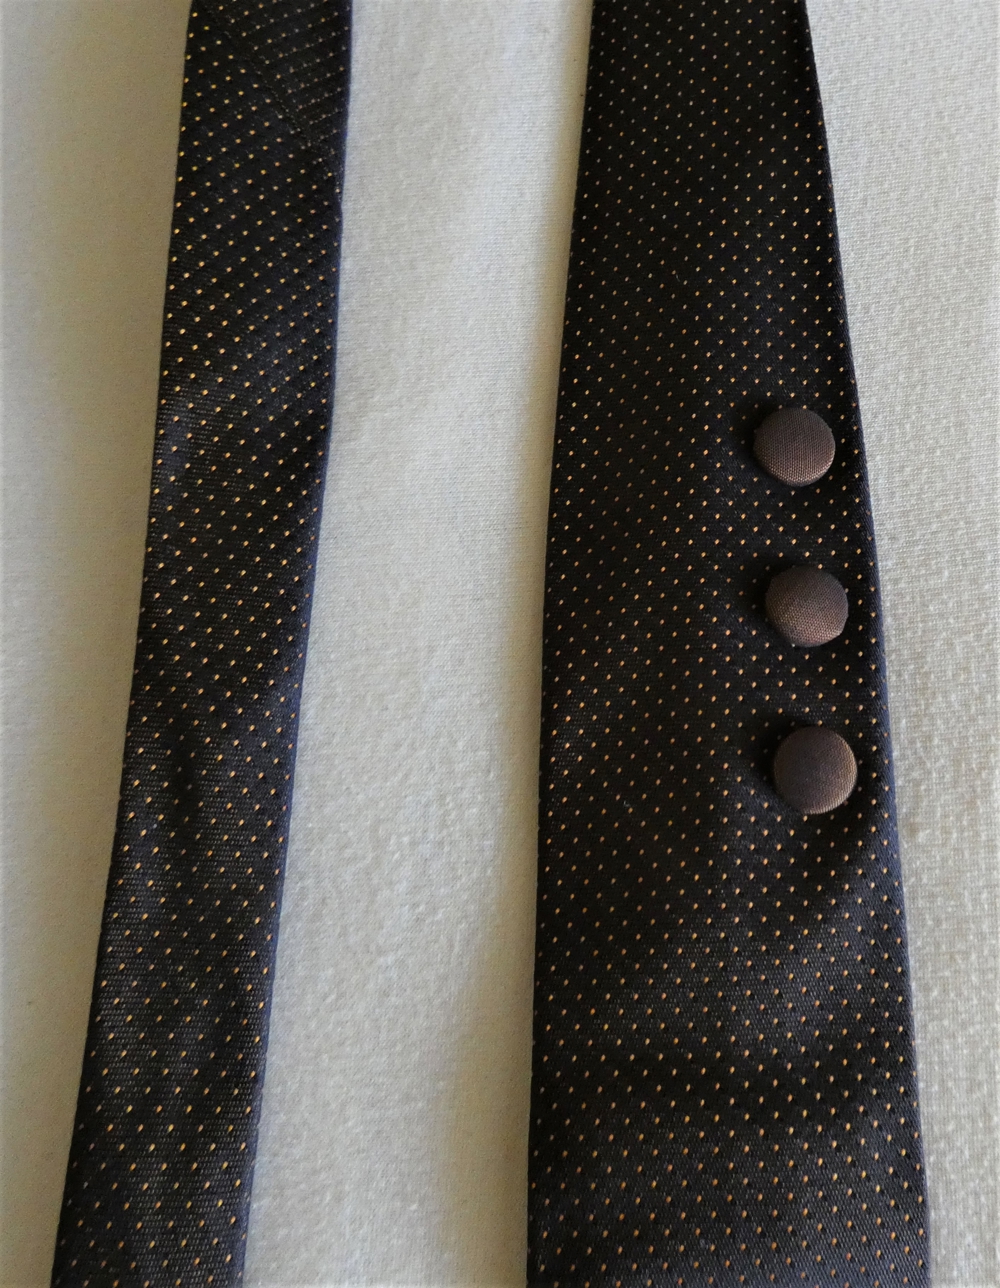 Krawatte schmal braun mit Punkten in rost sowie Knopfverzierung